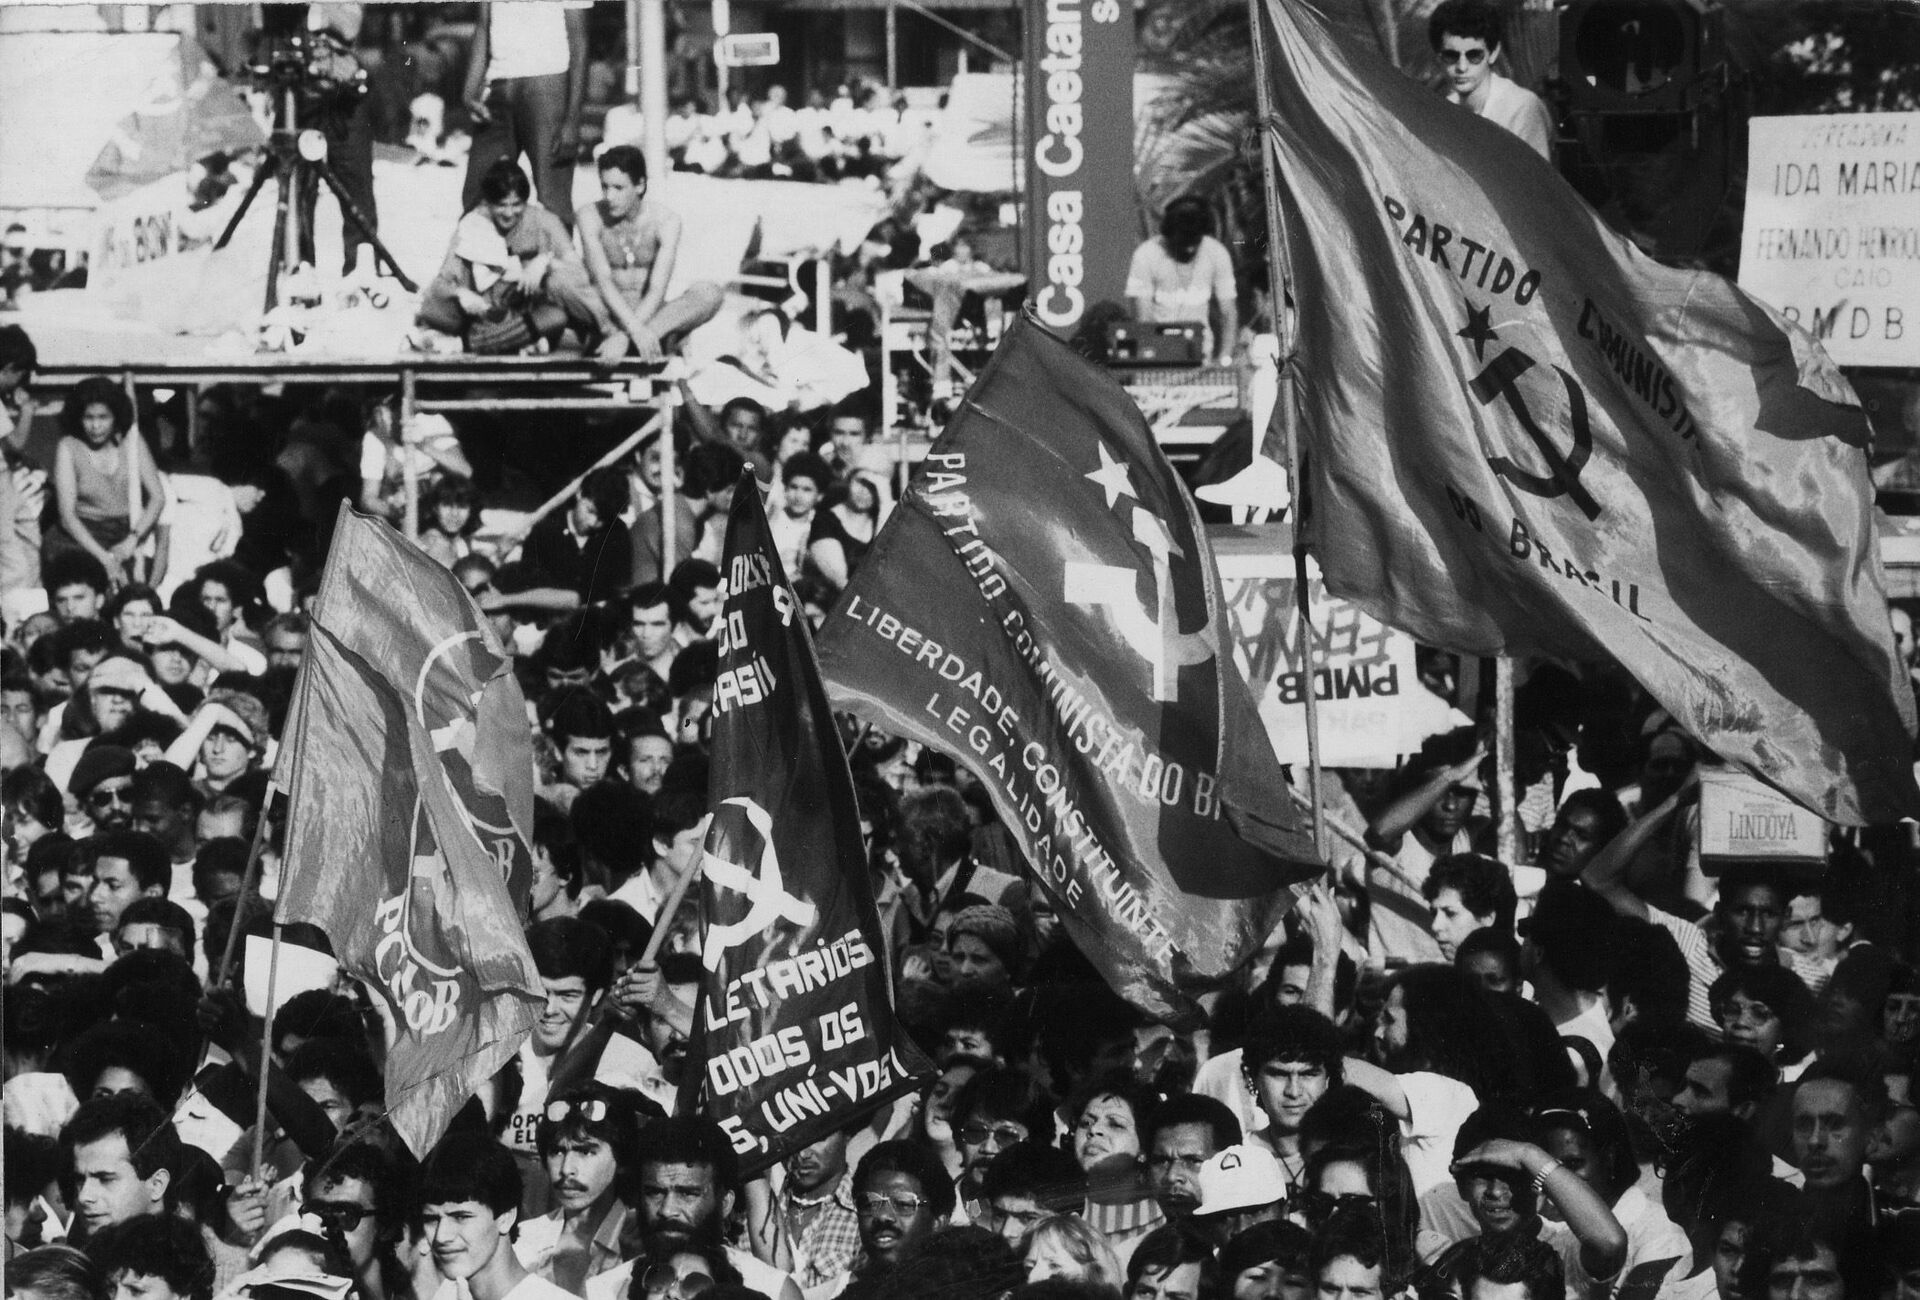 'Diferente da proposta marxista-leninista, PCdoB segue orientação esquerdista liberal', diz analista - Sputnik Brasil, 1920, 14.07.2021